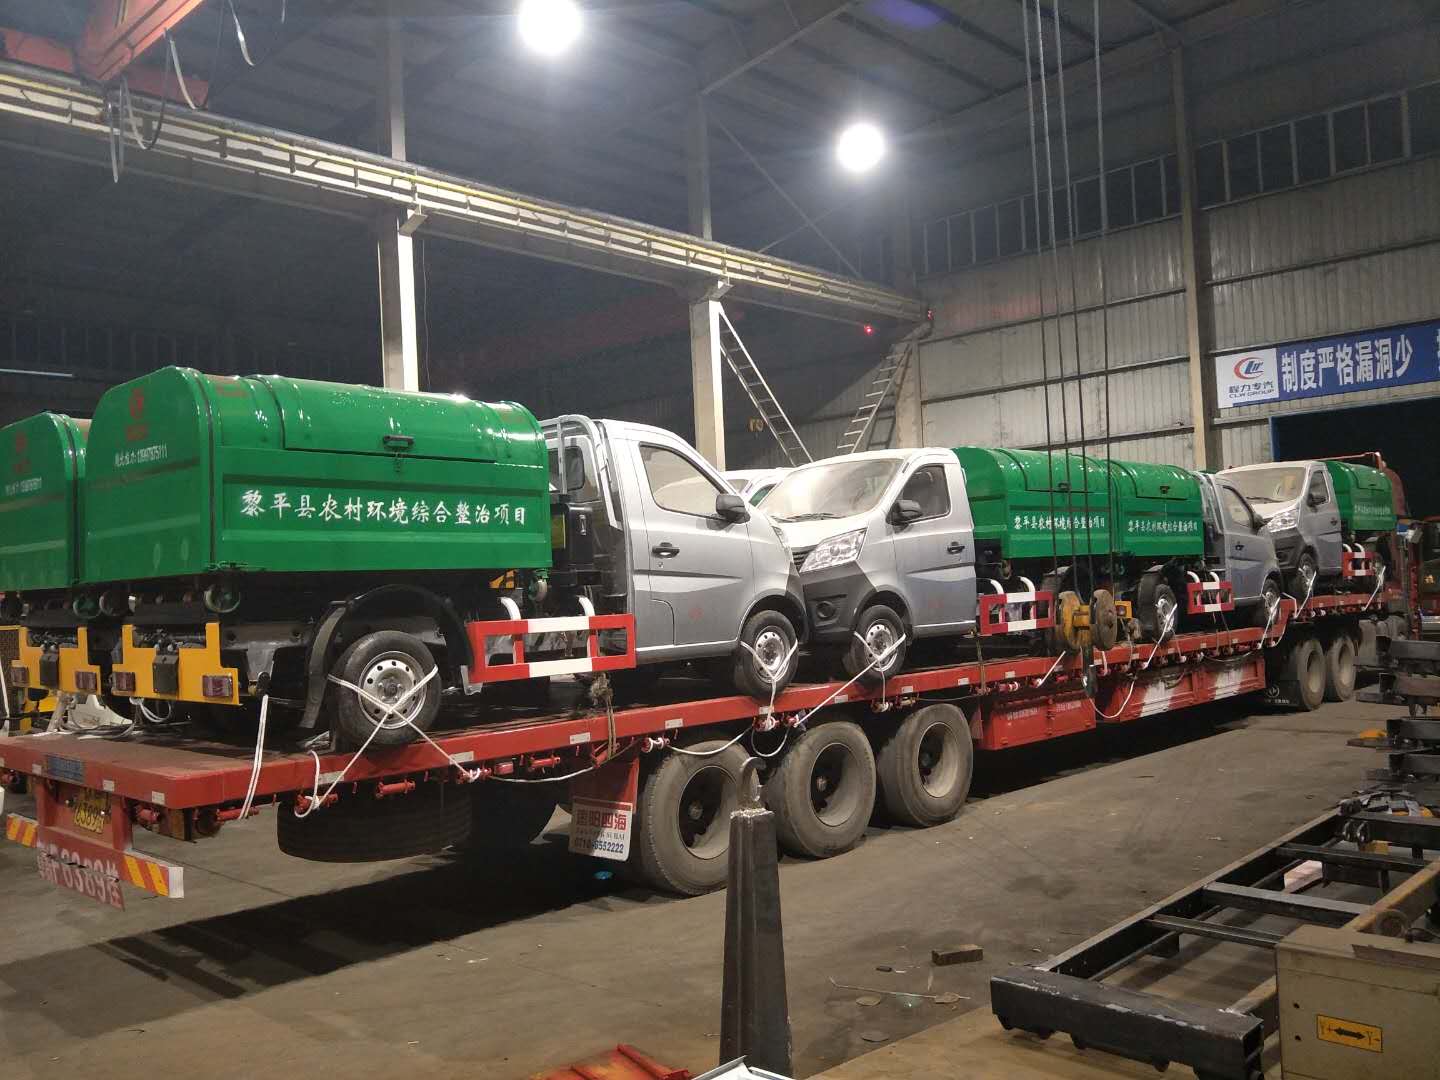 贵州省黎平县勾臂垃圾车开始大批量交货